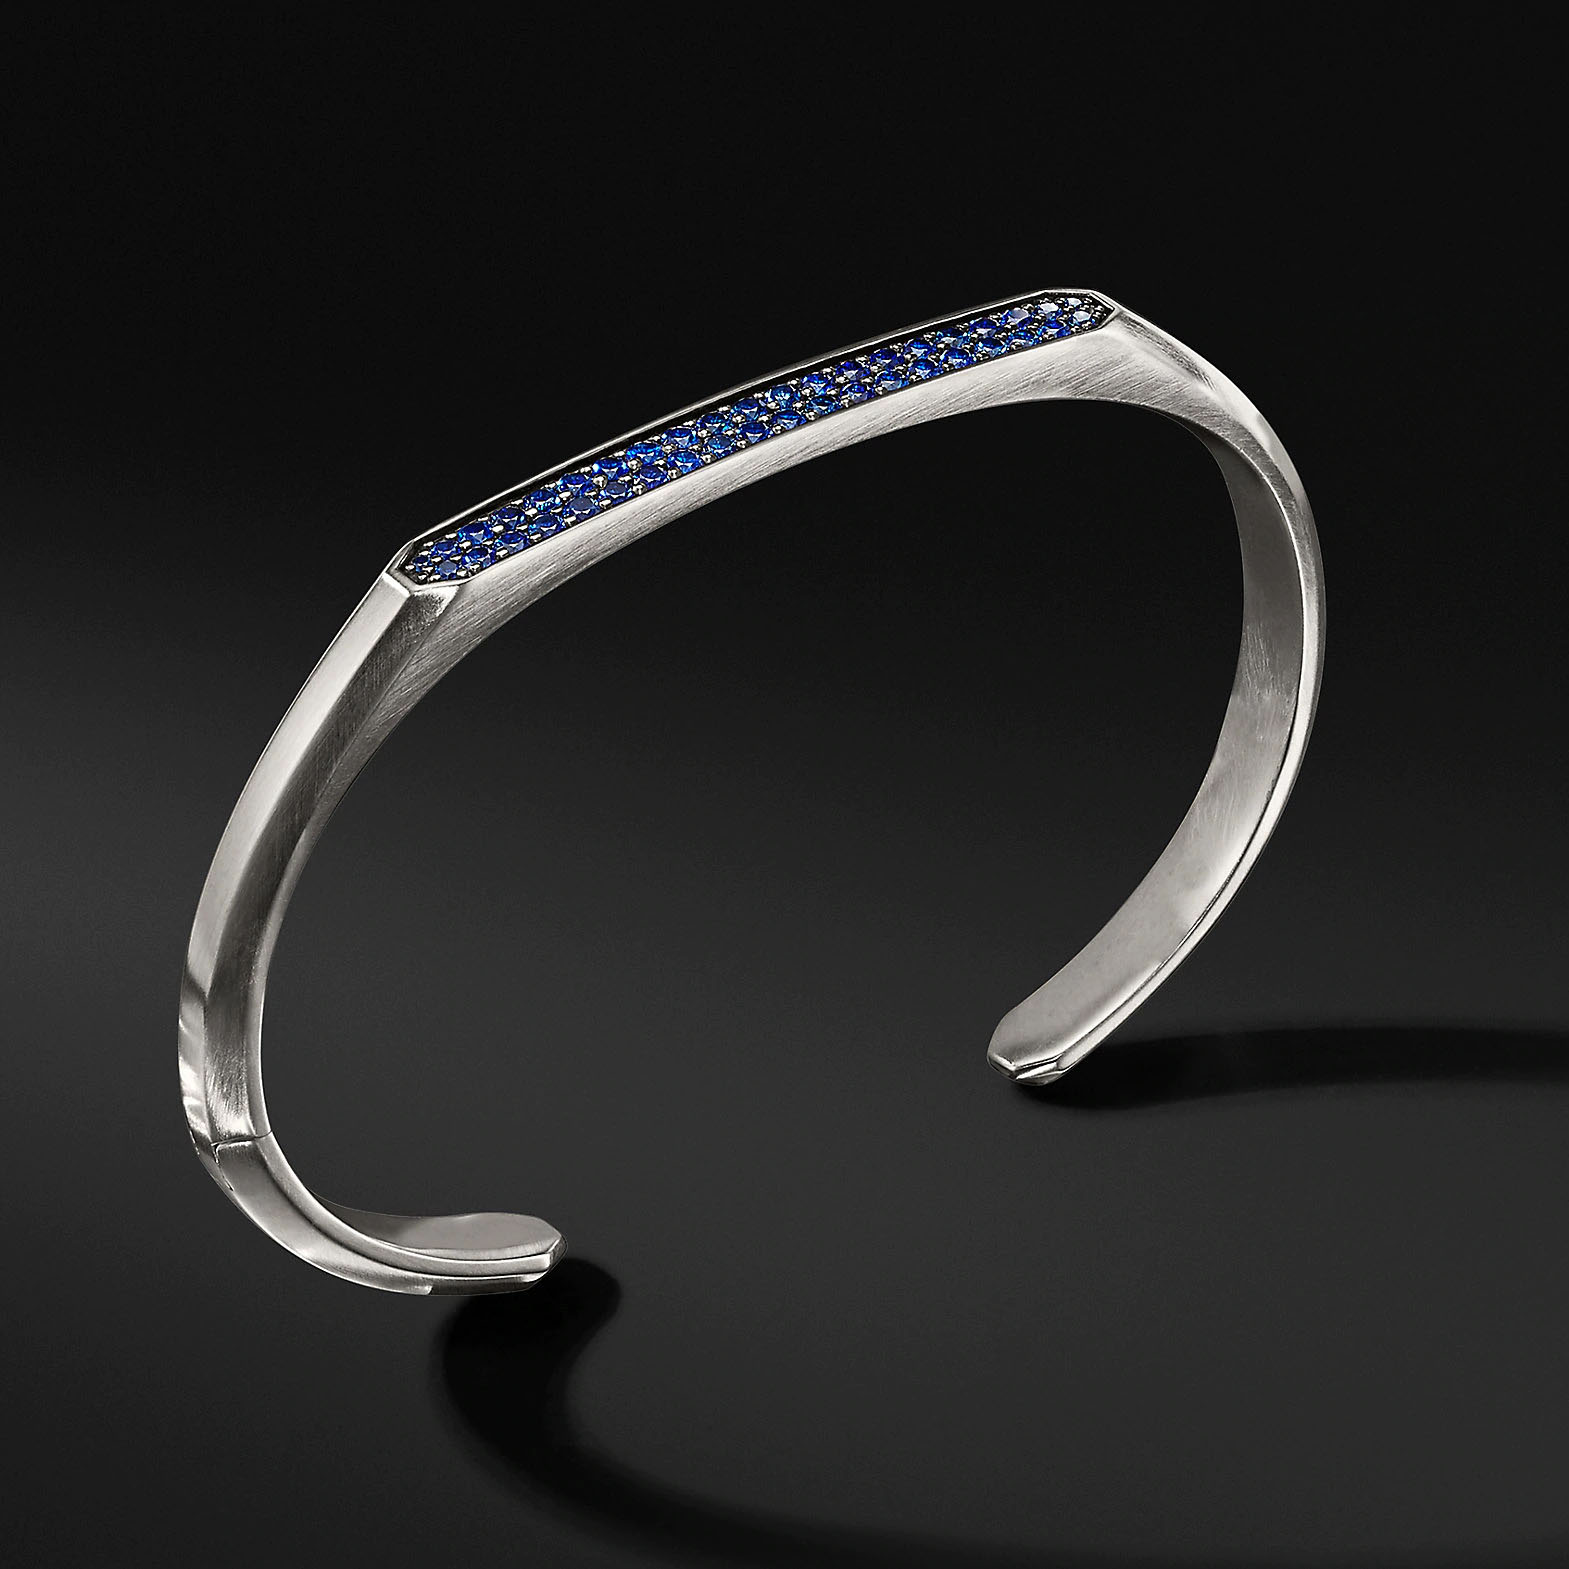 Atacado OEM ODM pulseira de prata esterlina design personalizado seu fornecedor de joias OEM/ODM Jewelry